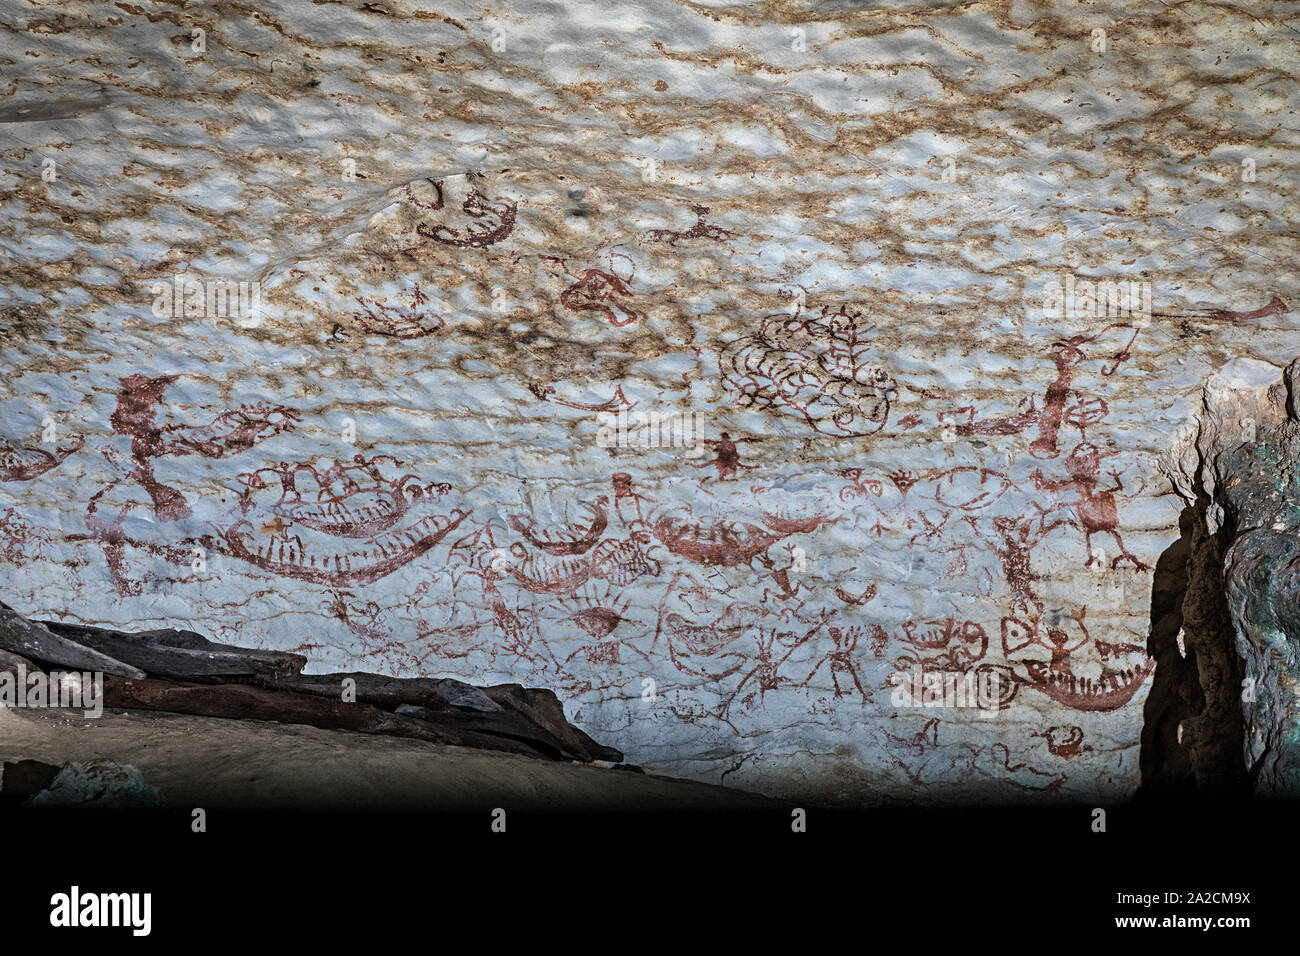 L'art préhistorique dans la grotte grotte peinte à l'INAH, Malaisie, jusqu'à 40 000 ans Banque D'Images